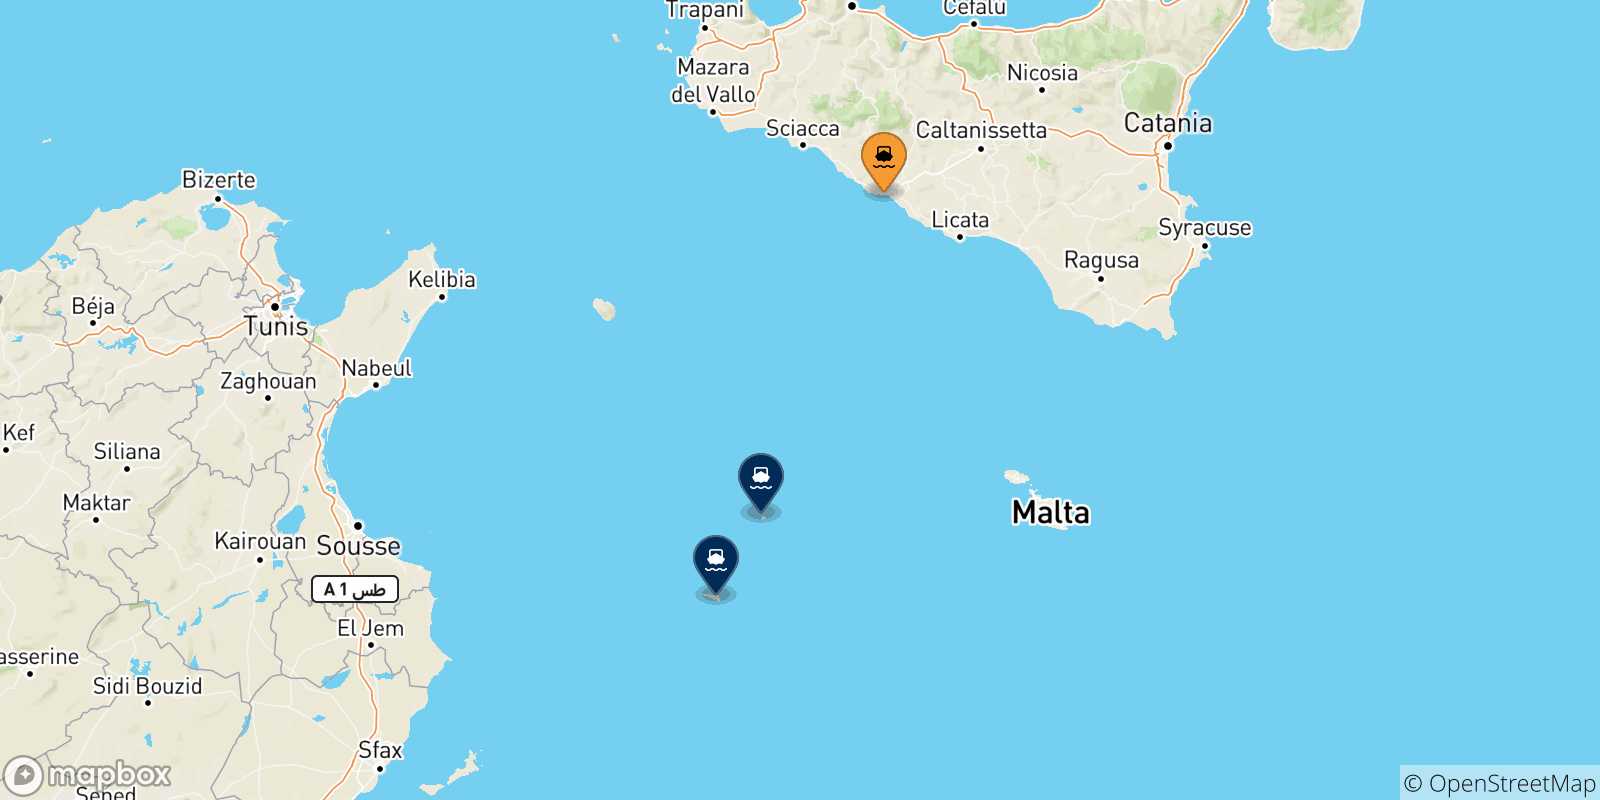 Mappa delle possibili rotte tra Porto Empedocle e l'Italia